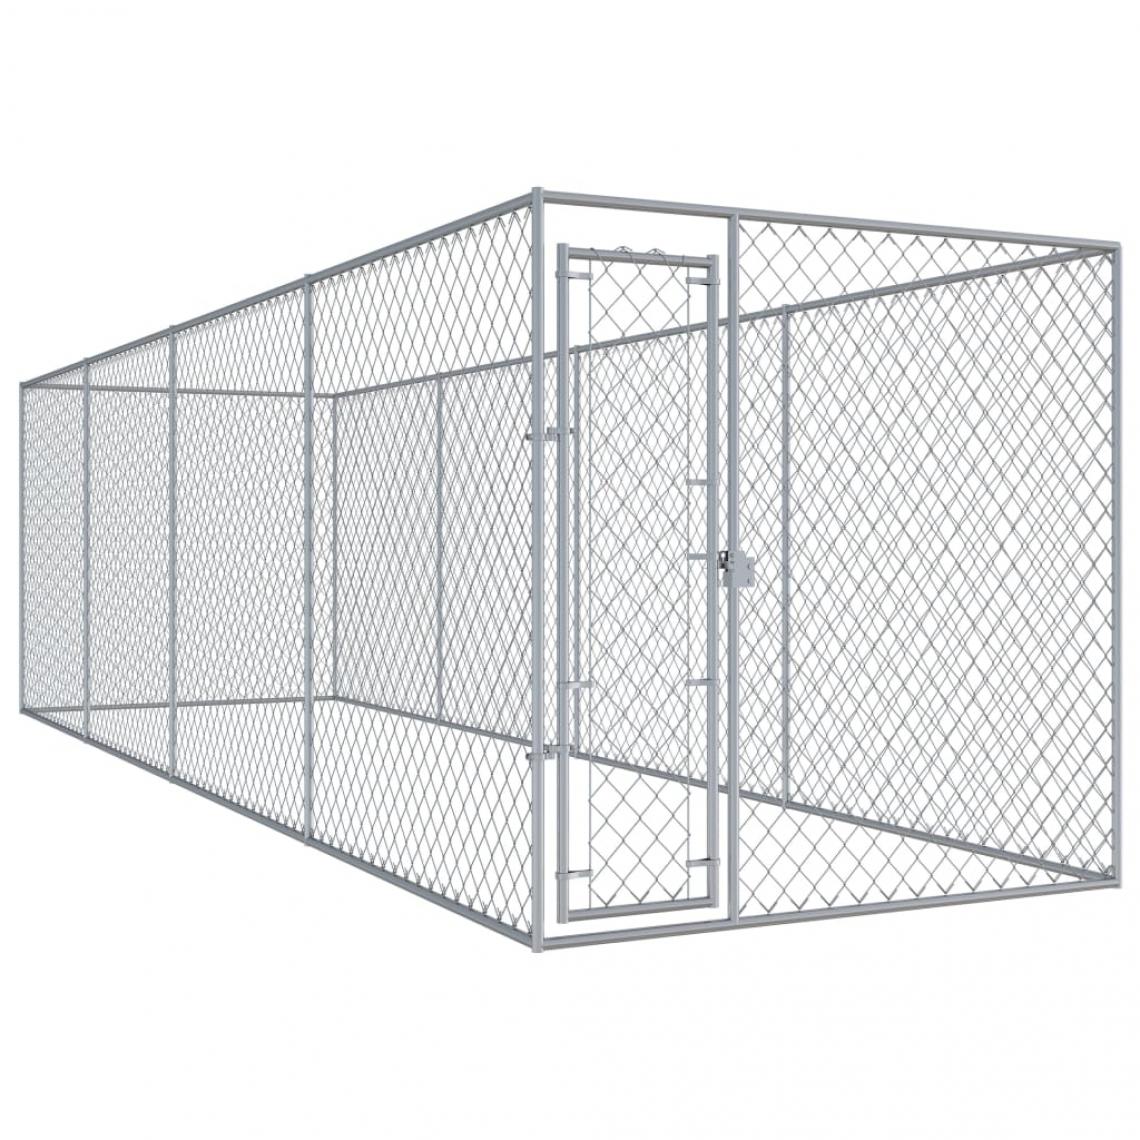 Helloshop26 - Chenil extérieur cage enclos parc animaux chien d'extérieur pour chiens 760 x 192 x 185 cm 02_0000360 - Clôture pour chien